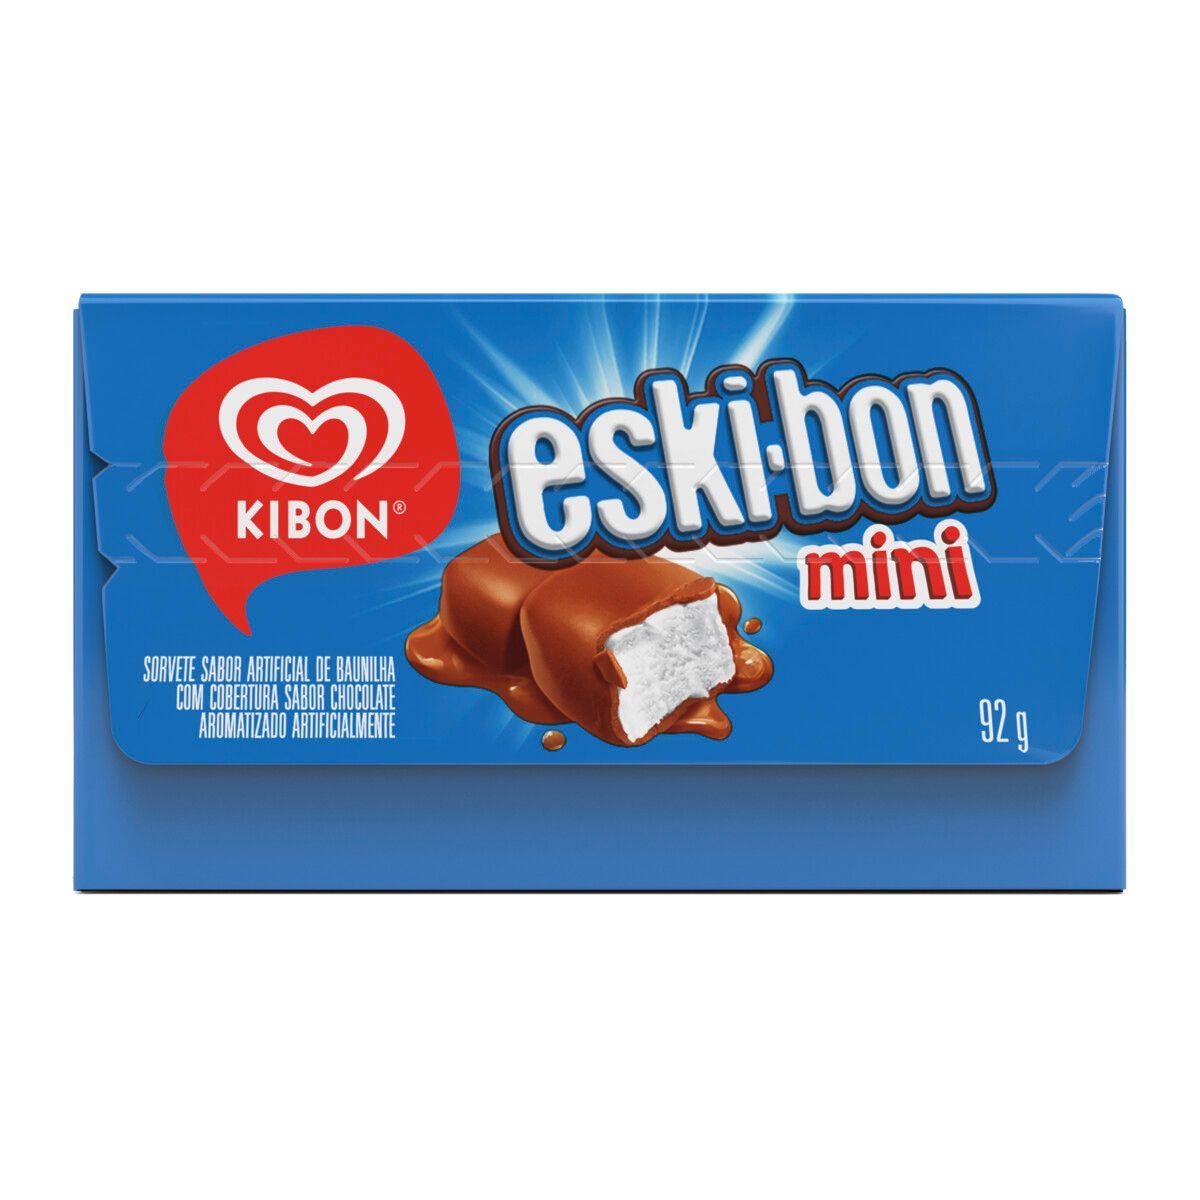 Sorvete Kibon Eski-bon Mini Caixa 92g image number 2